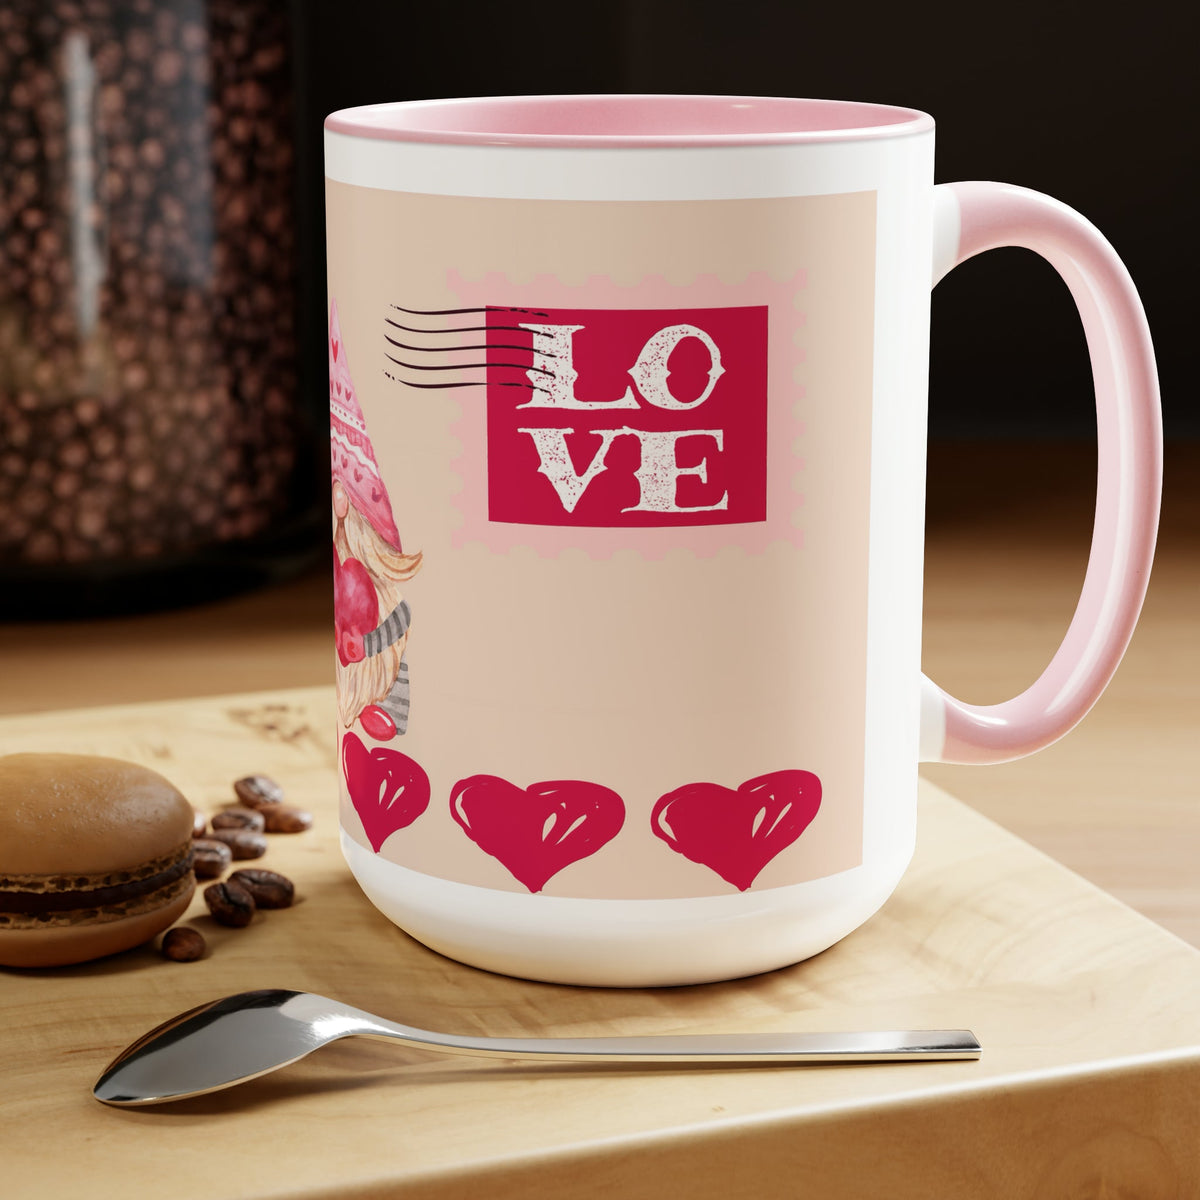 Valentine's | Two-Tone Coffee Mug | 15oz - abrandilion